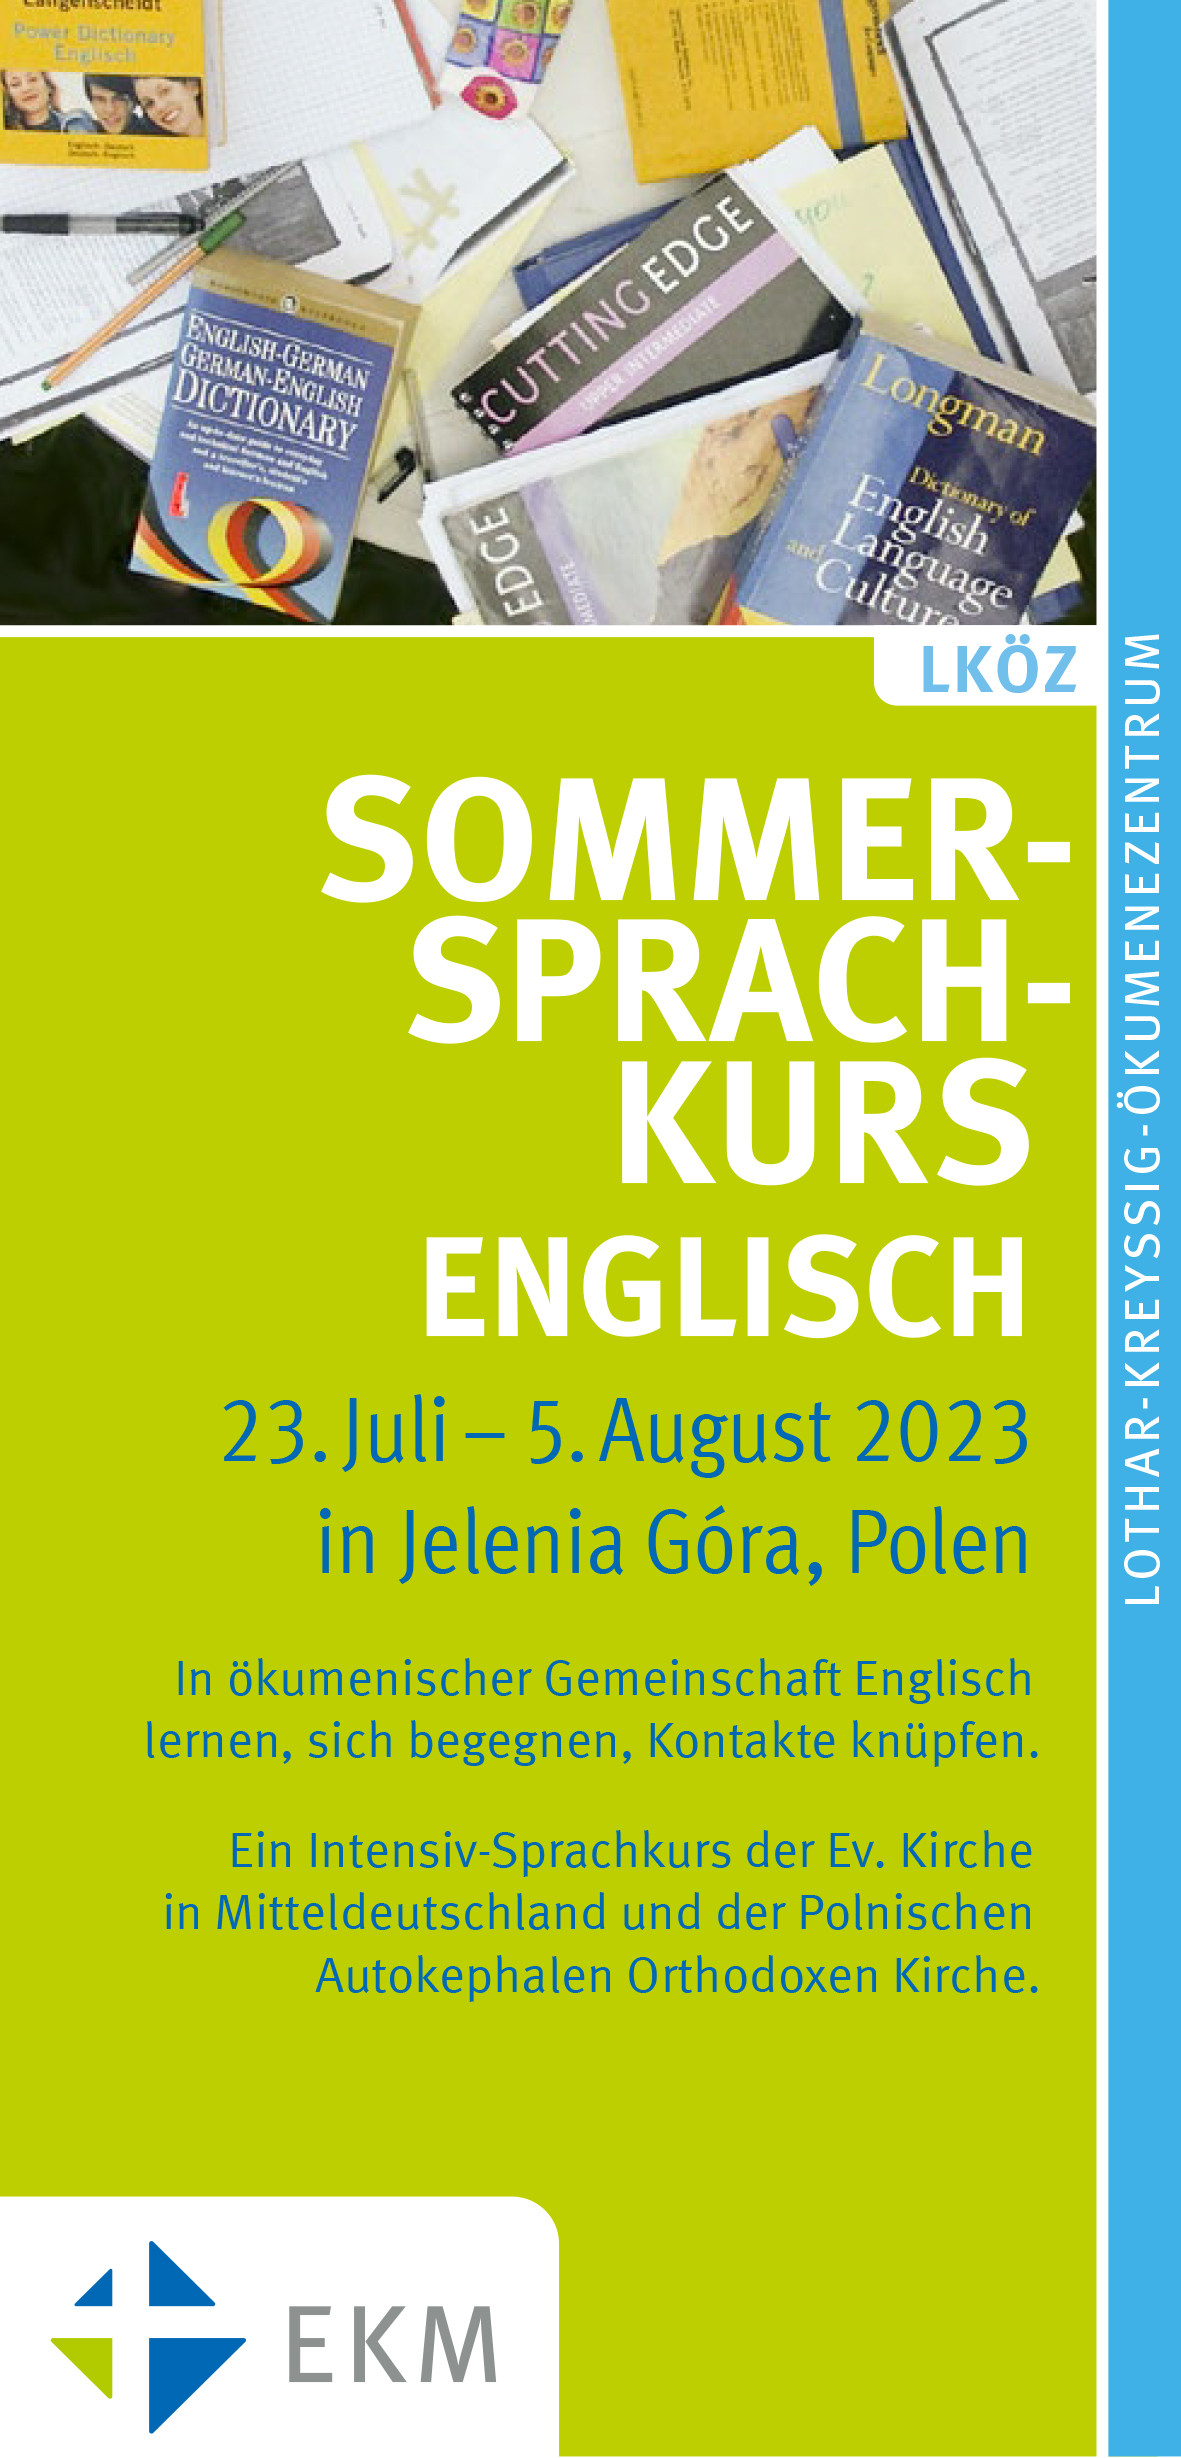 Flyer zum Sommersprachkurs Englisch 2023 der EKM